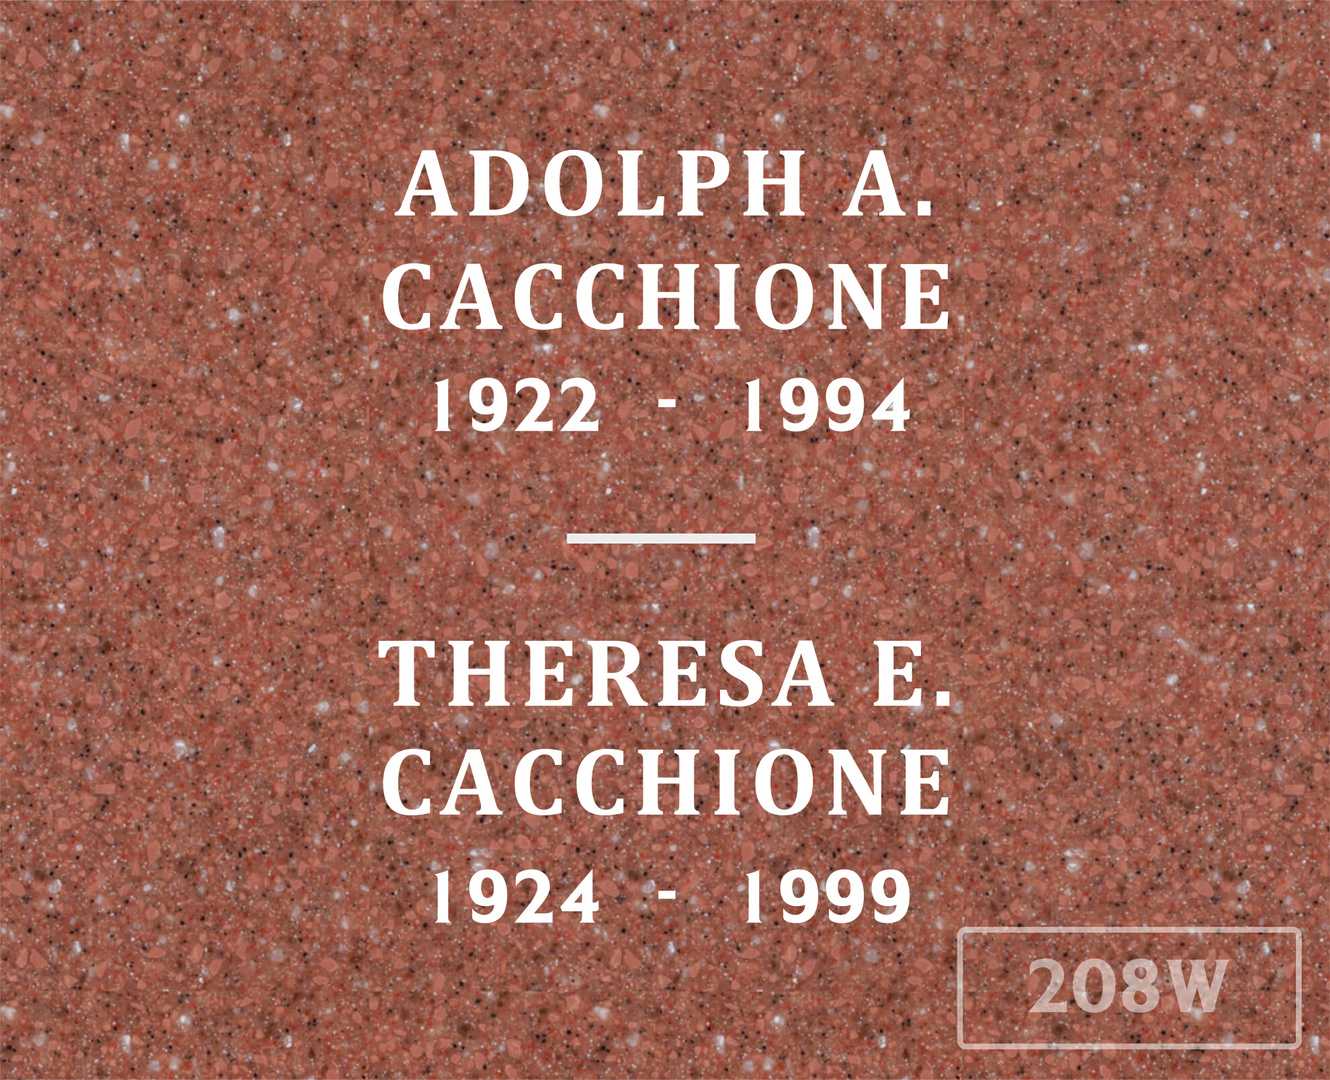 Adolph A. Cacchione's grave